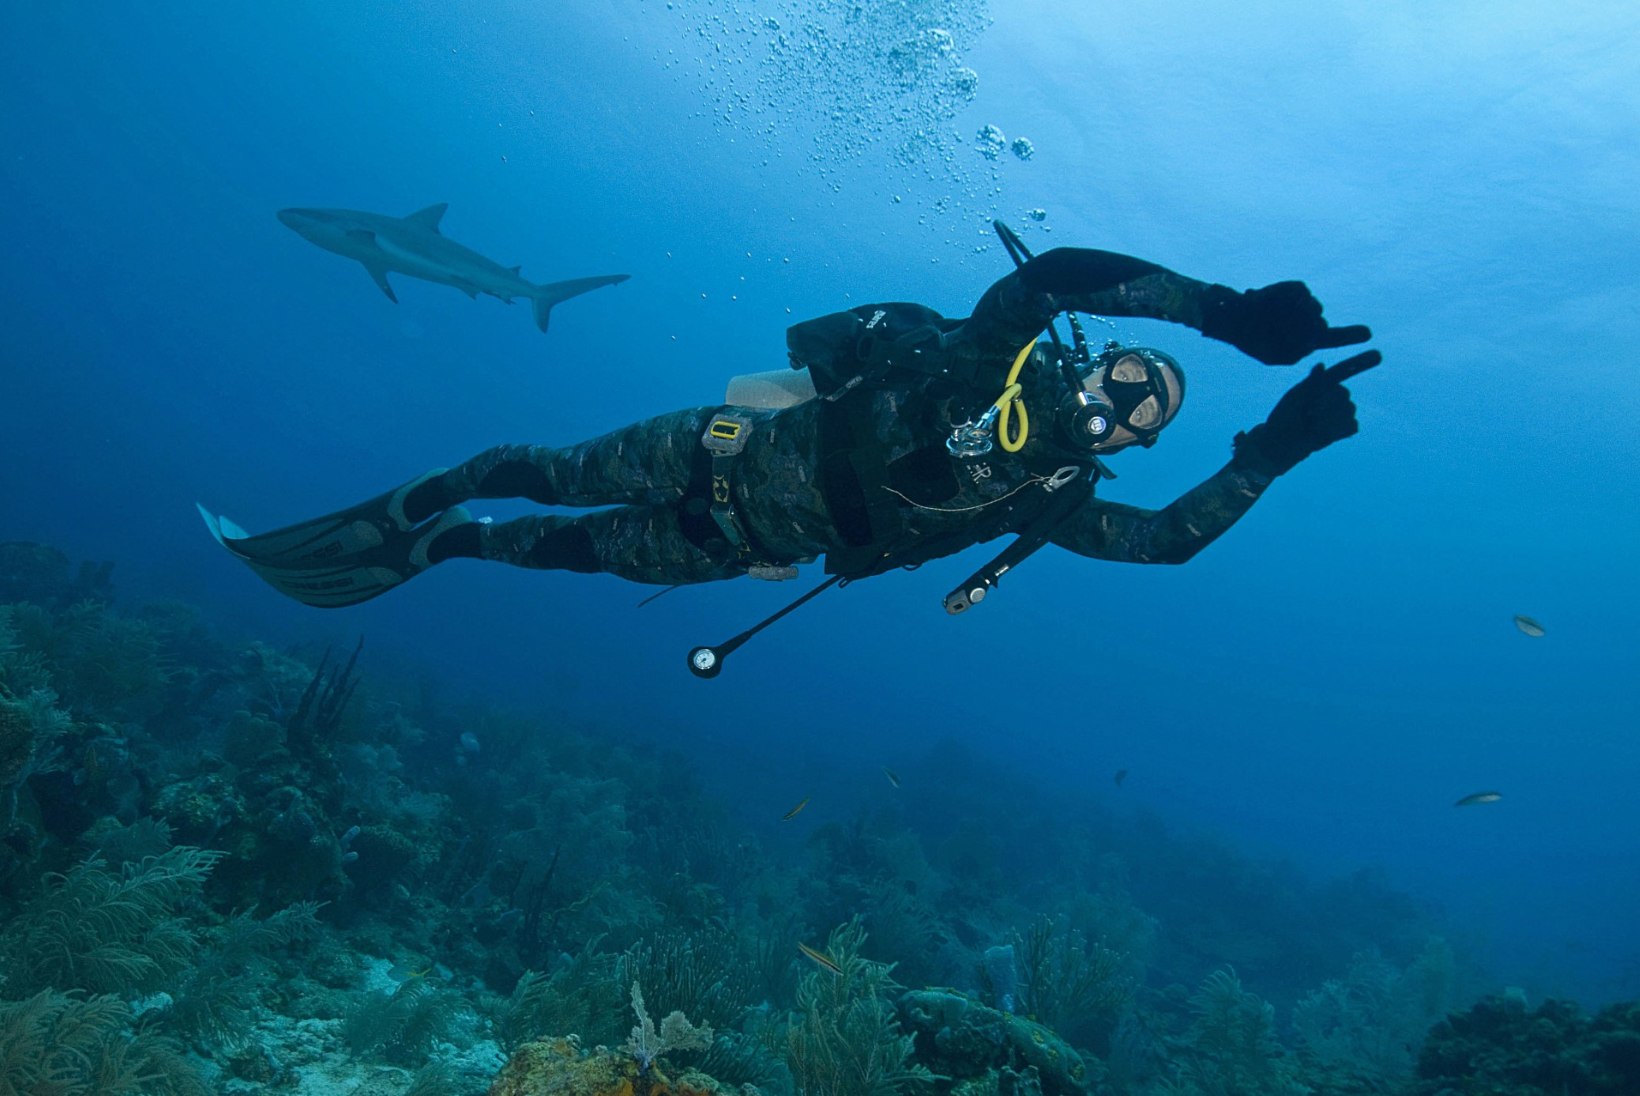 ARMSAD FOTOD: sukelduja sattus vee all kokku kalaga, kes tahtis kallistusi ja musisid